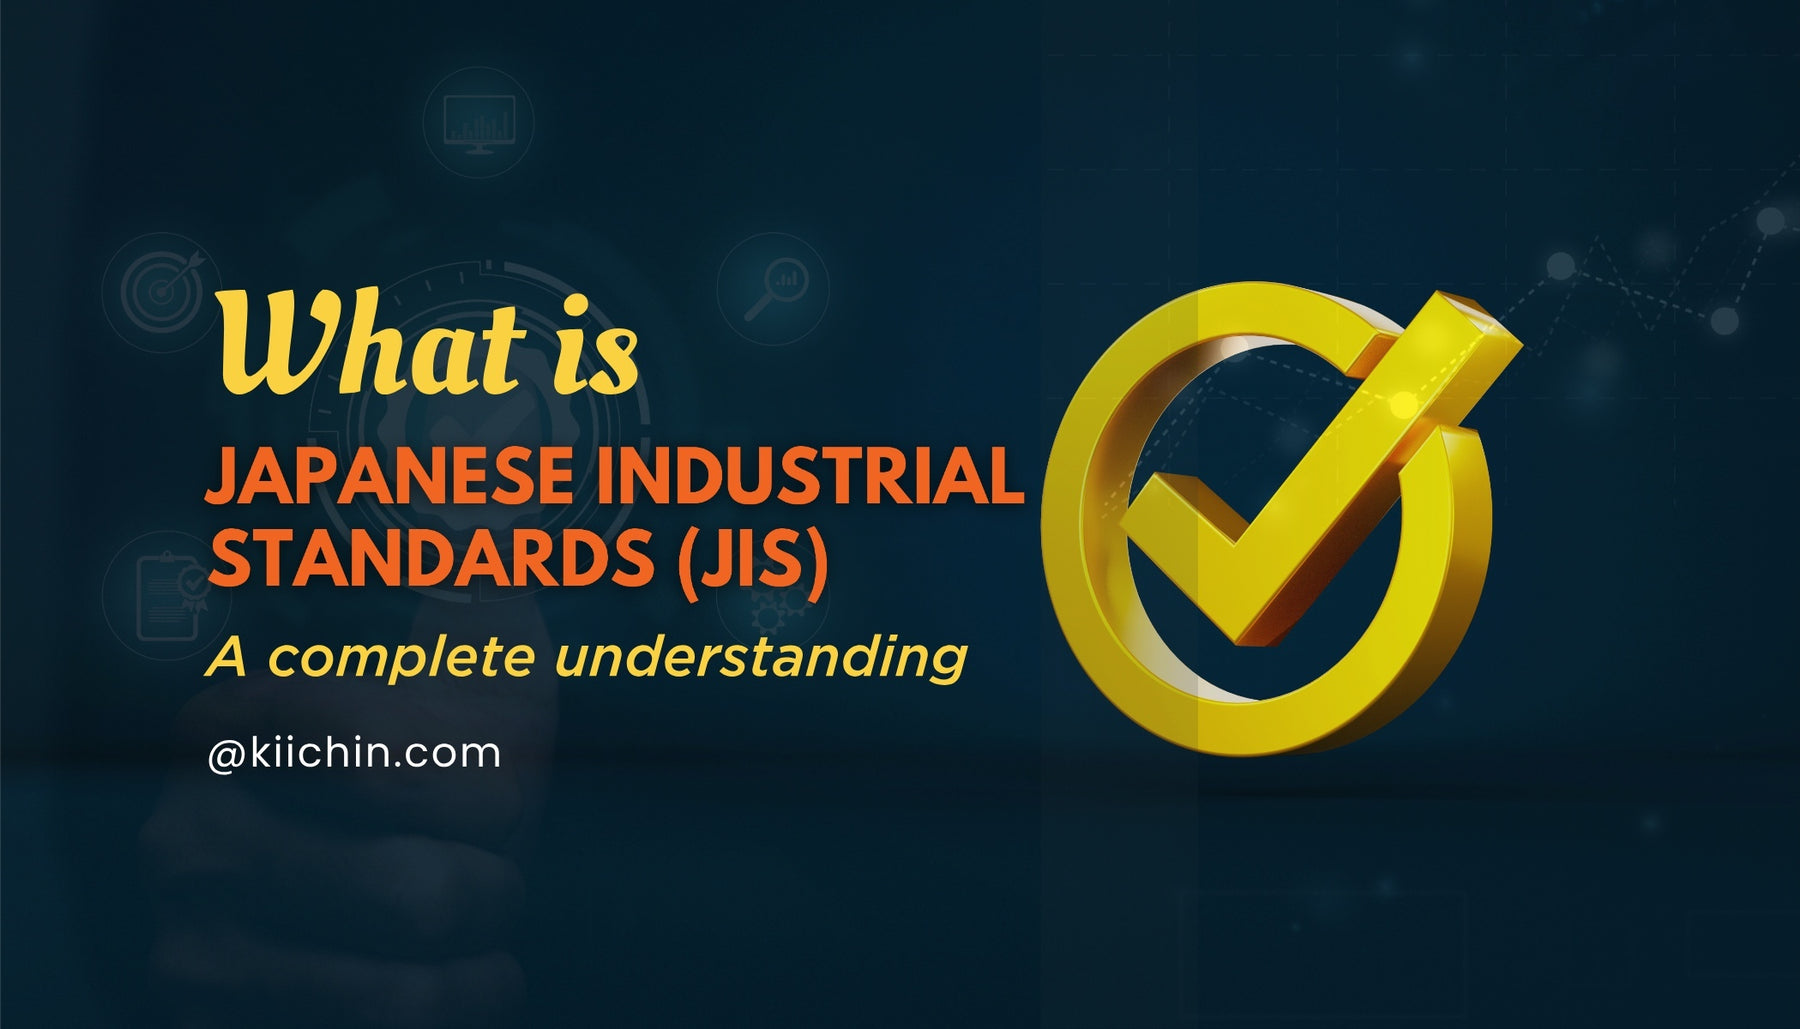 Understanding the Japanese Industrial Standards (JIS)